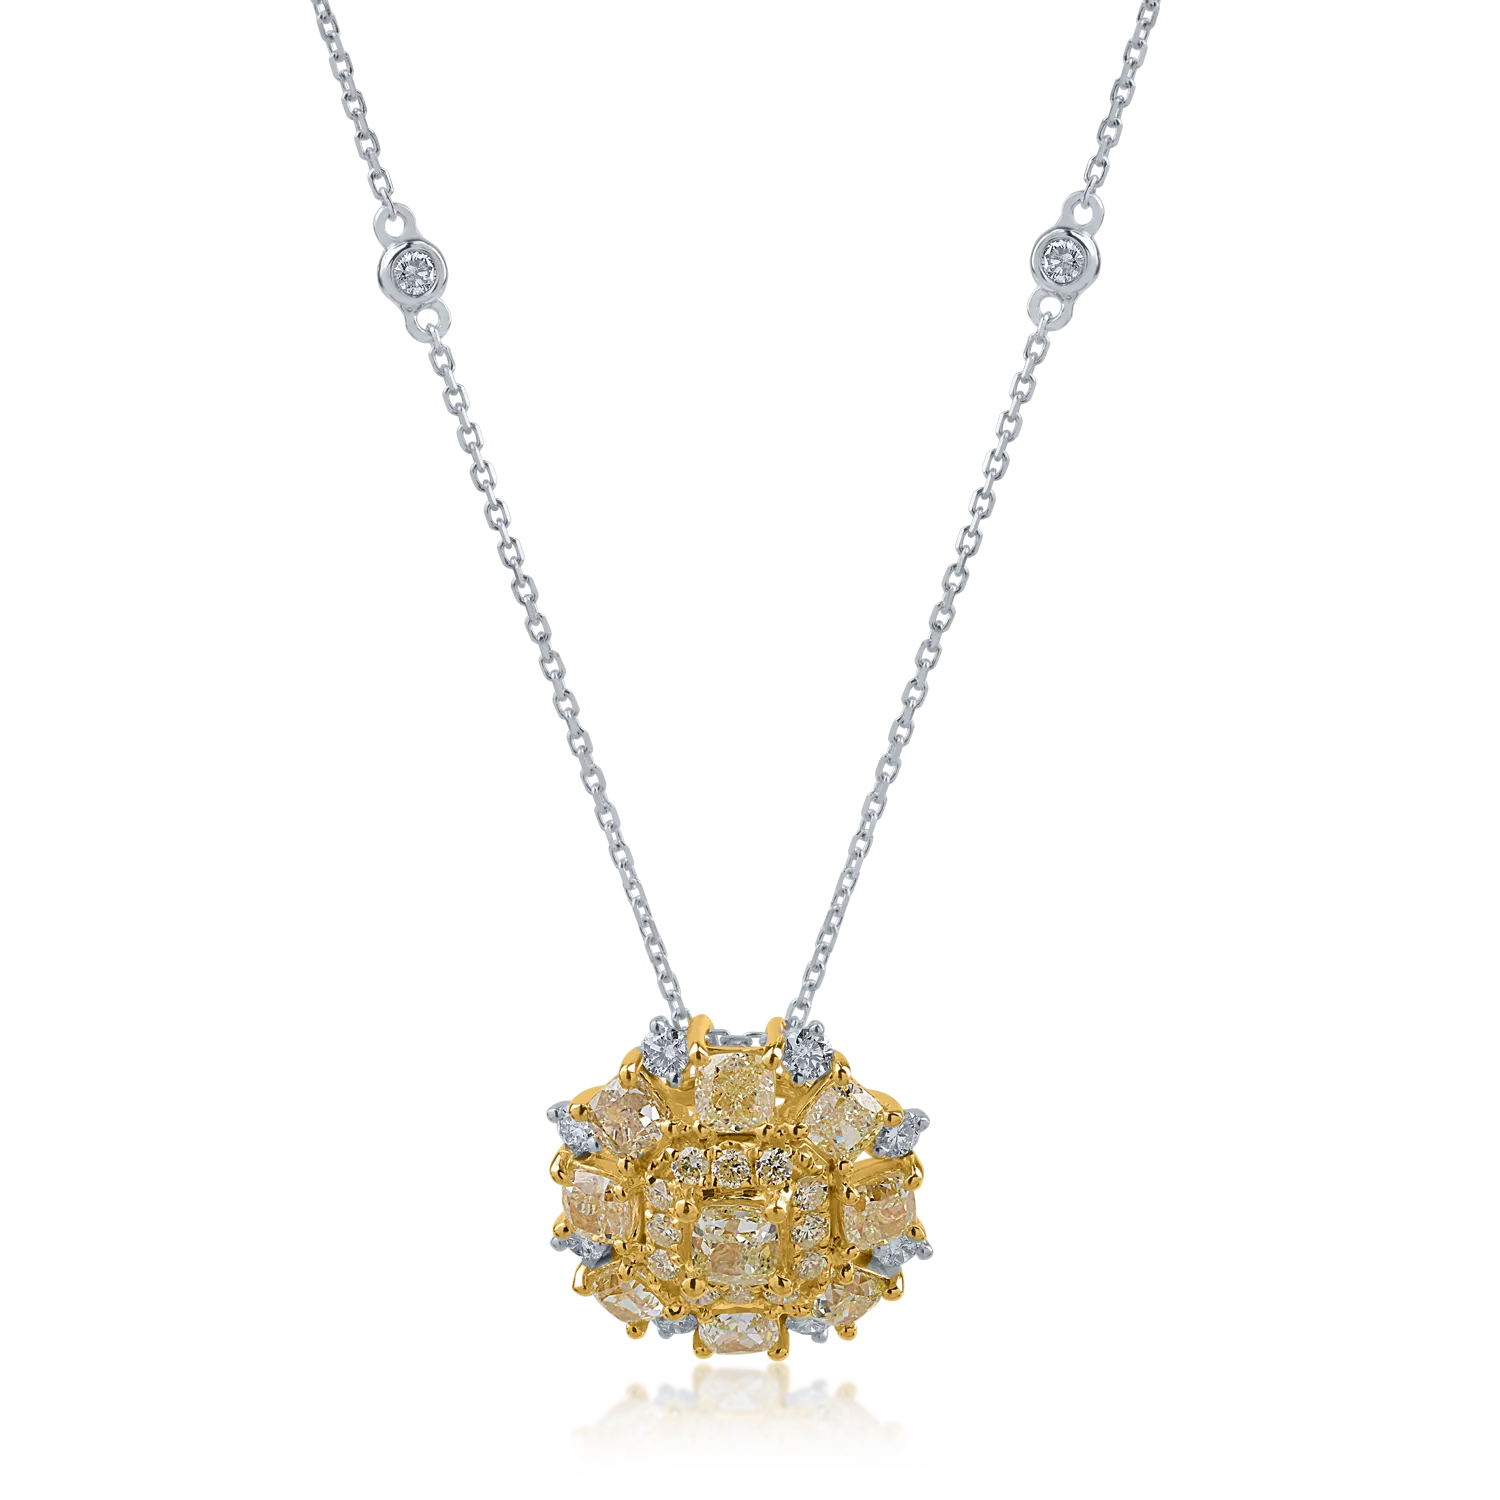 Sárga-fehér arany medál nyaklánc 2.7ct sárga gyémántokkal és 0.38ct tiszta gyémántokkal